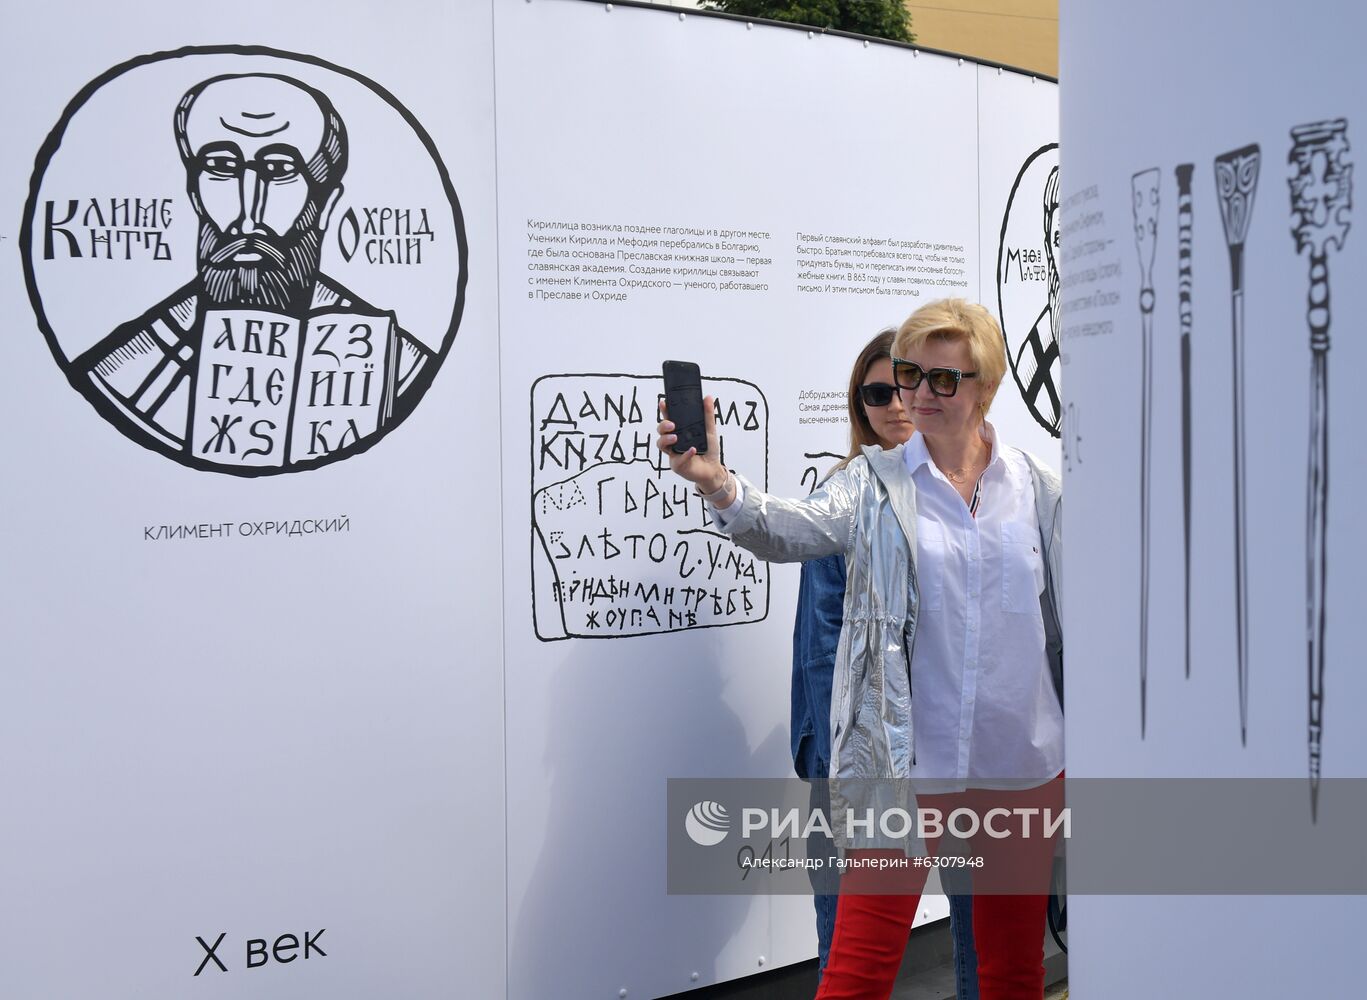 Открытие уличного проекта "33 Знака" в Санкт-Петербурге